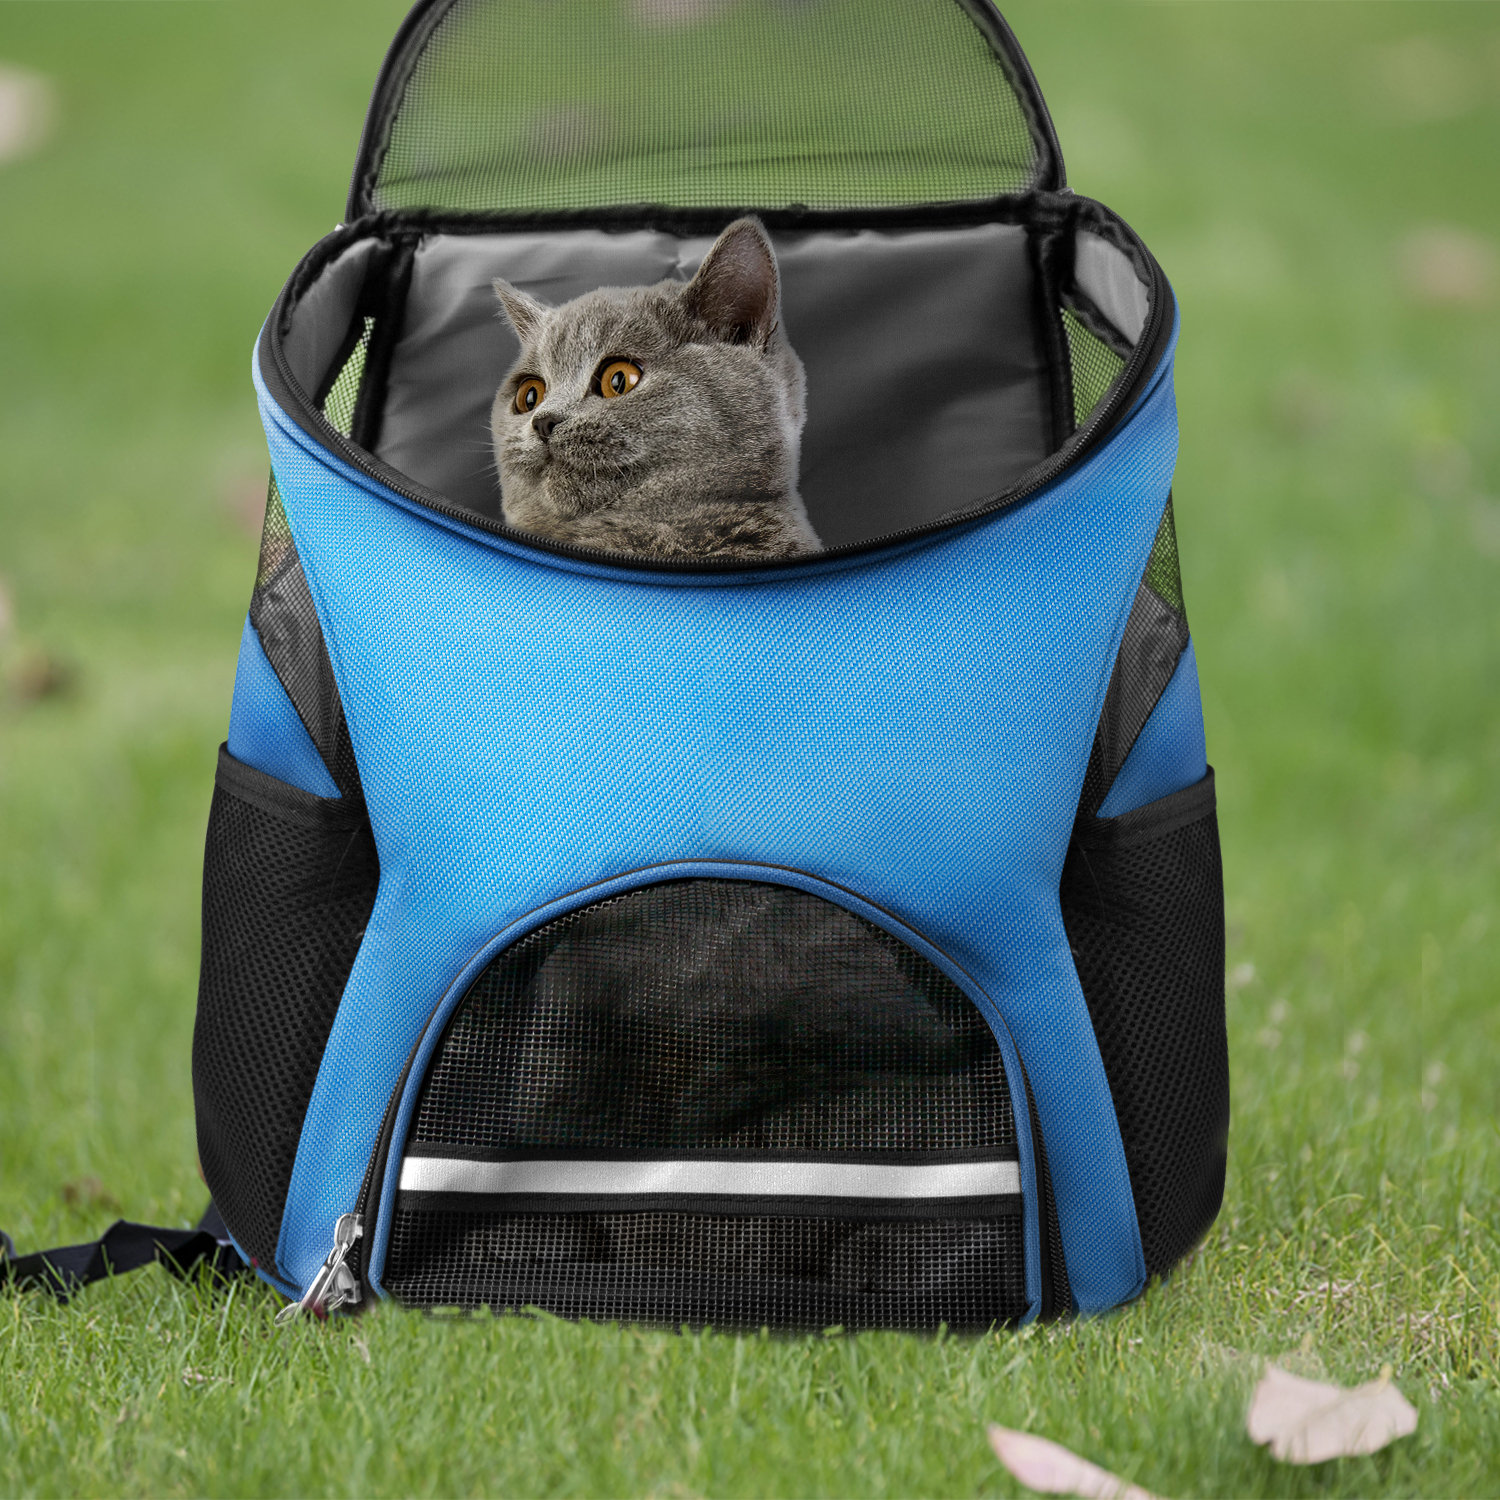 https://assets.wfcdn.com/im/44815283/compr-r85/2275/227537456/tucker-murphy-pet-pet-carrier-breathable-mesh-travel-pet-cat-dog-backpackblue.jpg